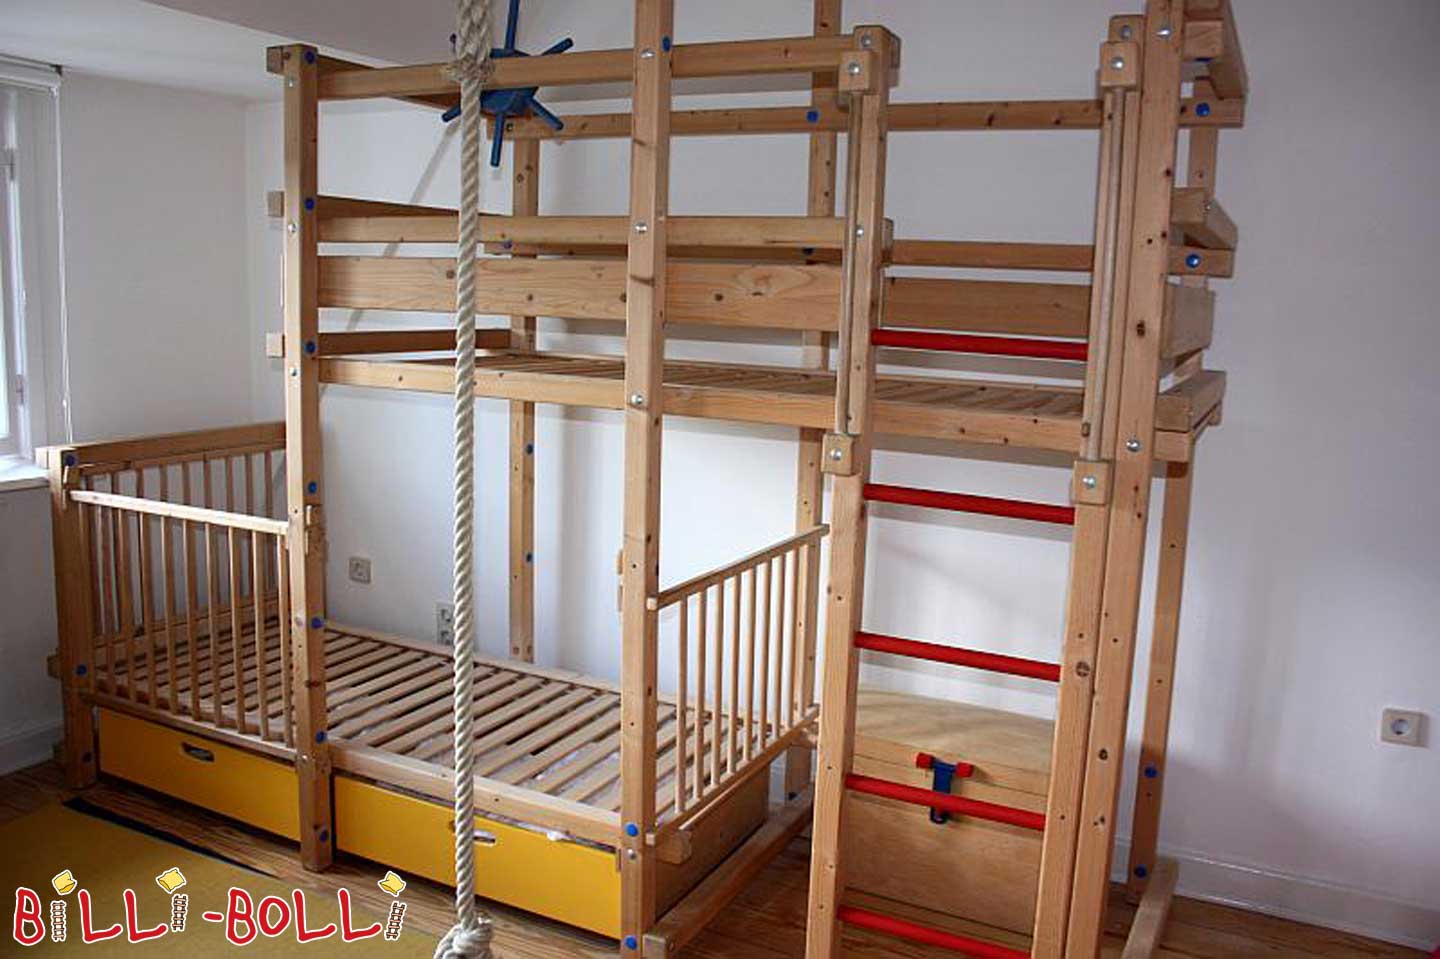 Двухъярусная кровать Billi-Bolli со смещением сбоку (Категория: Двухъярусная кровать б/у)